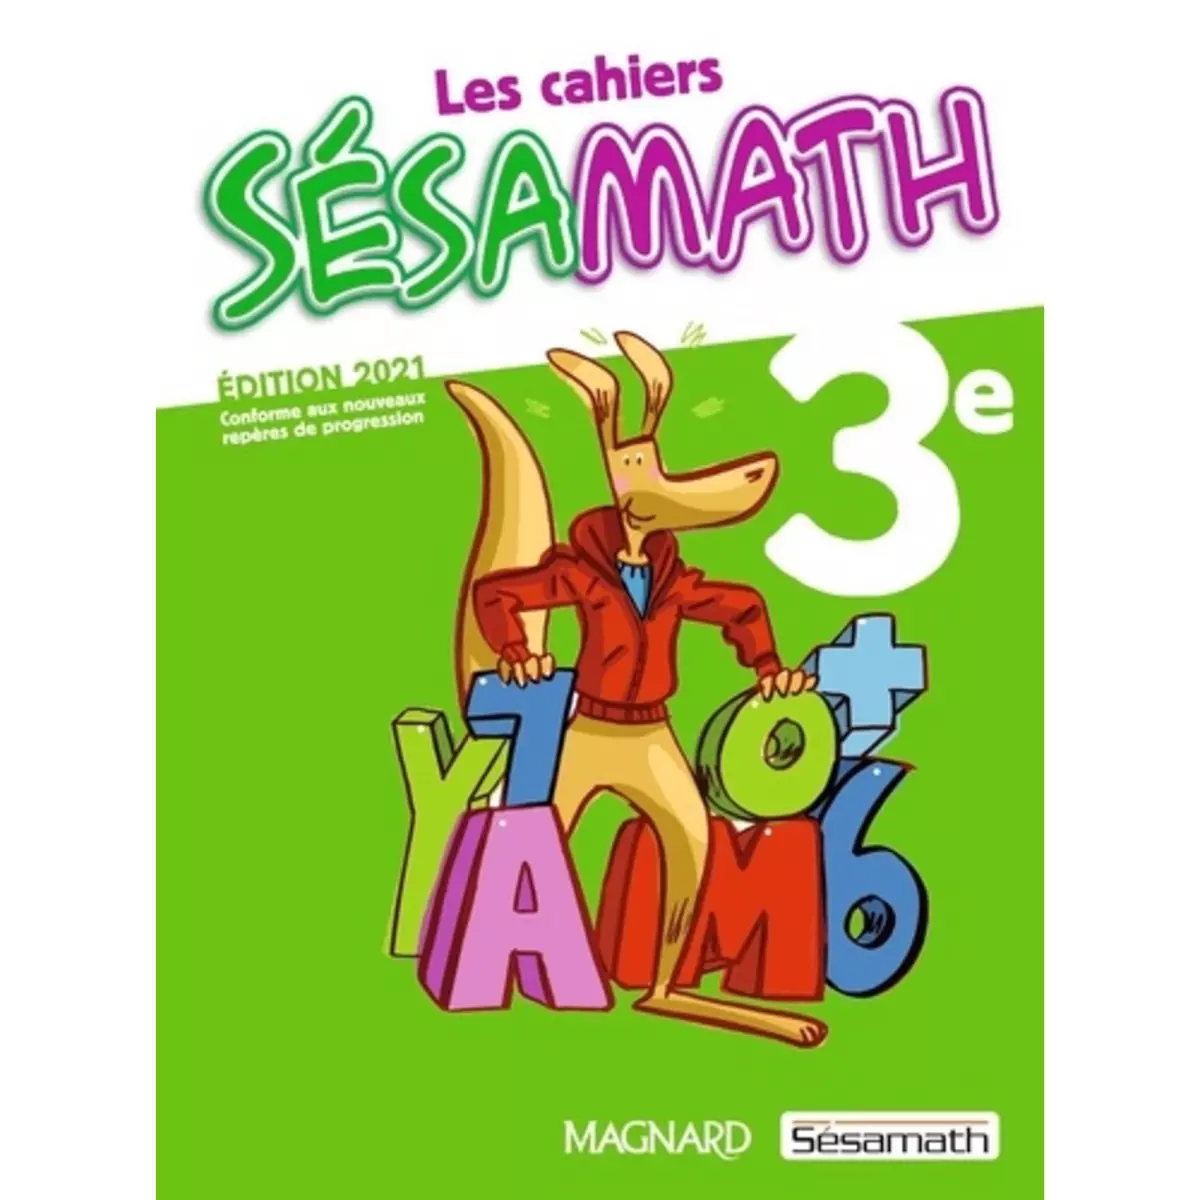  LES CAHIERS SESAMATH 3E. EDITION 2021, Sésamath